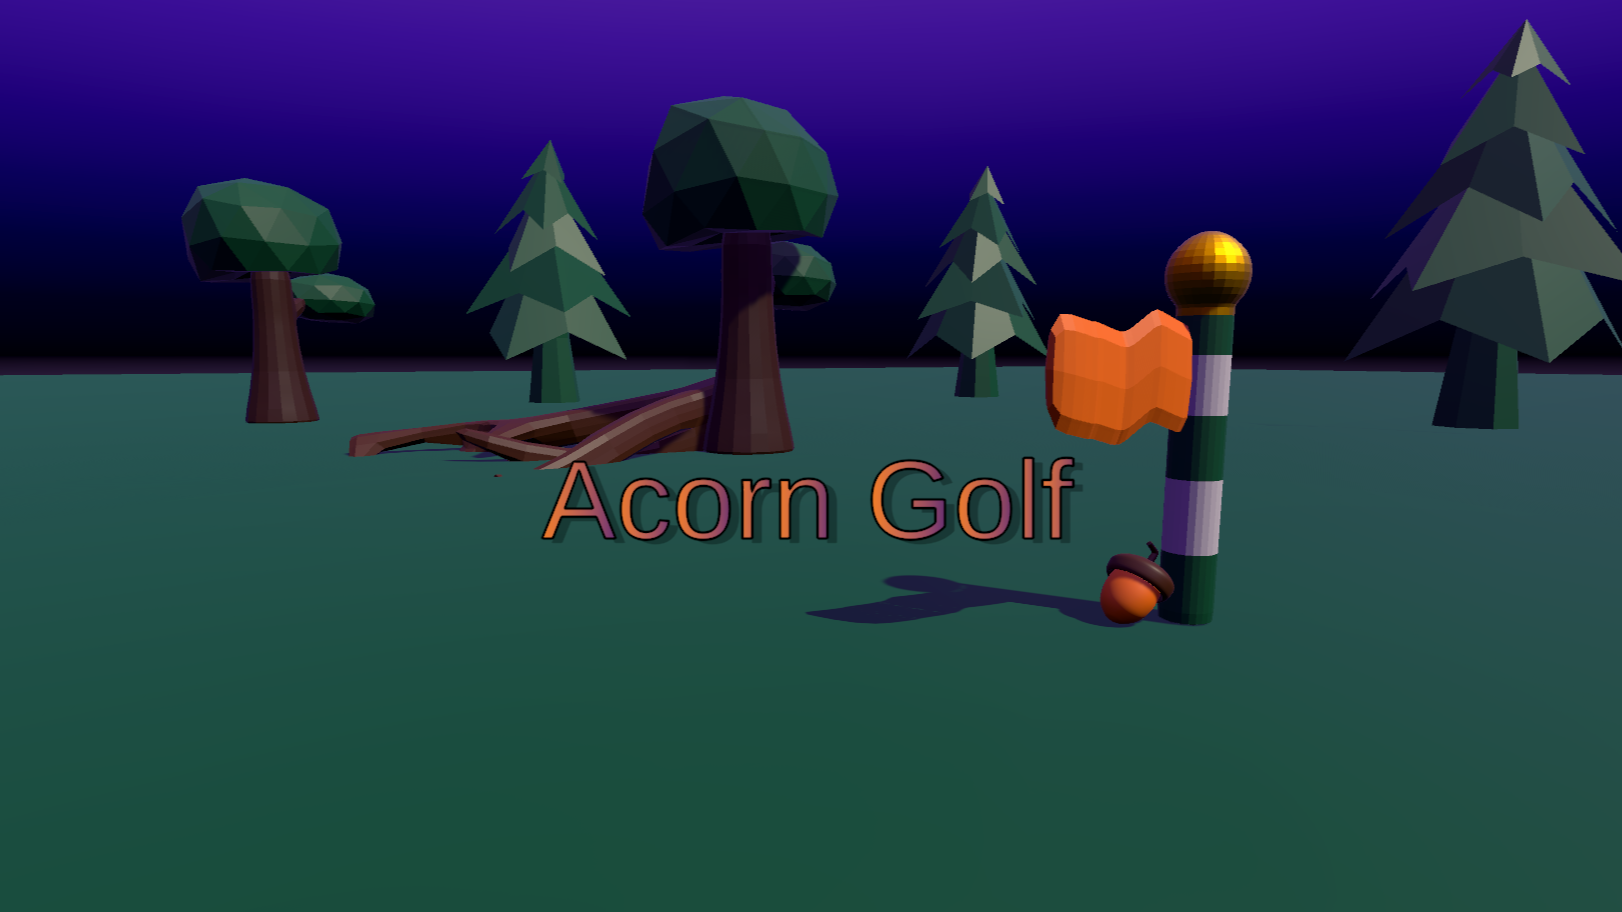 A screenshot from Acorn Golf